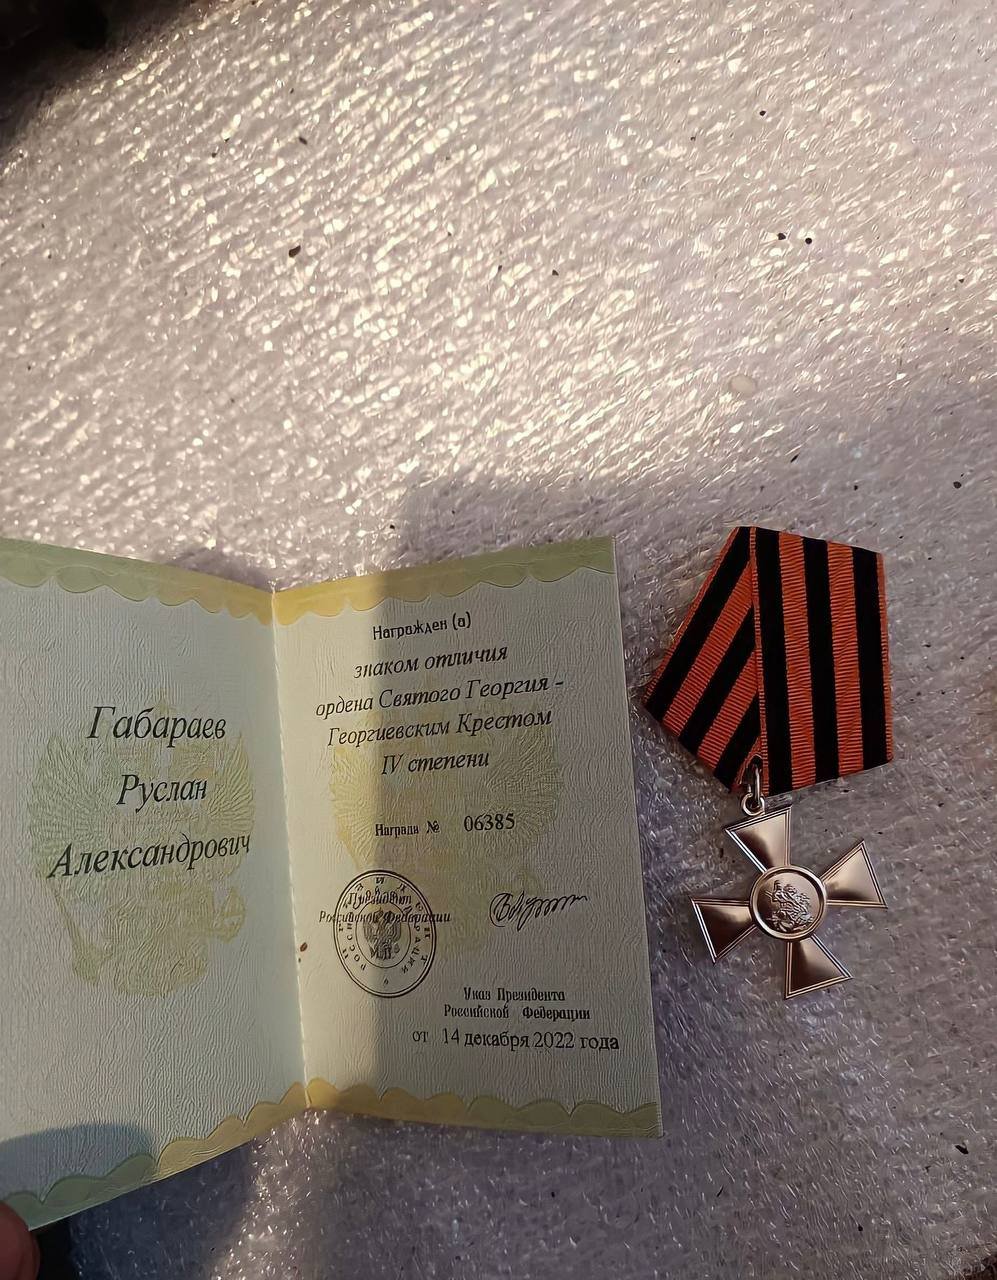 Боец из Осетии награжден орденом Святого Георгия